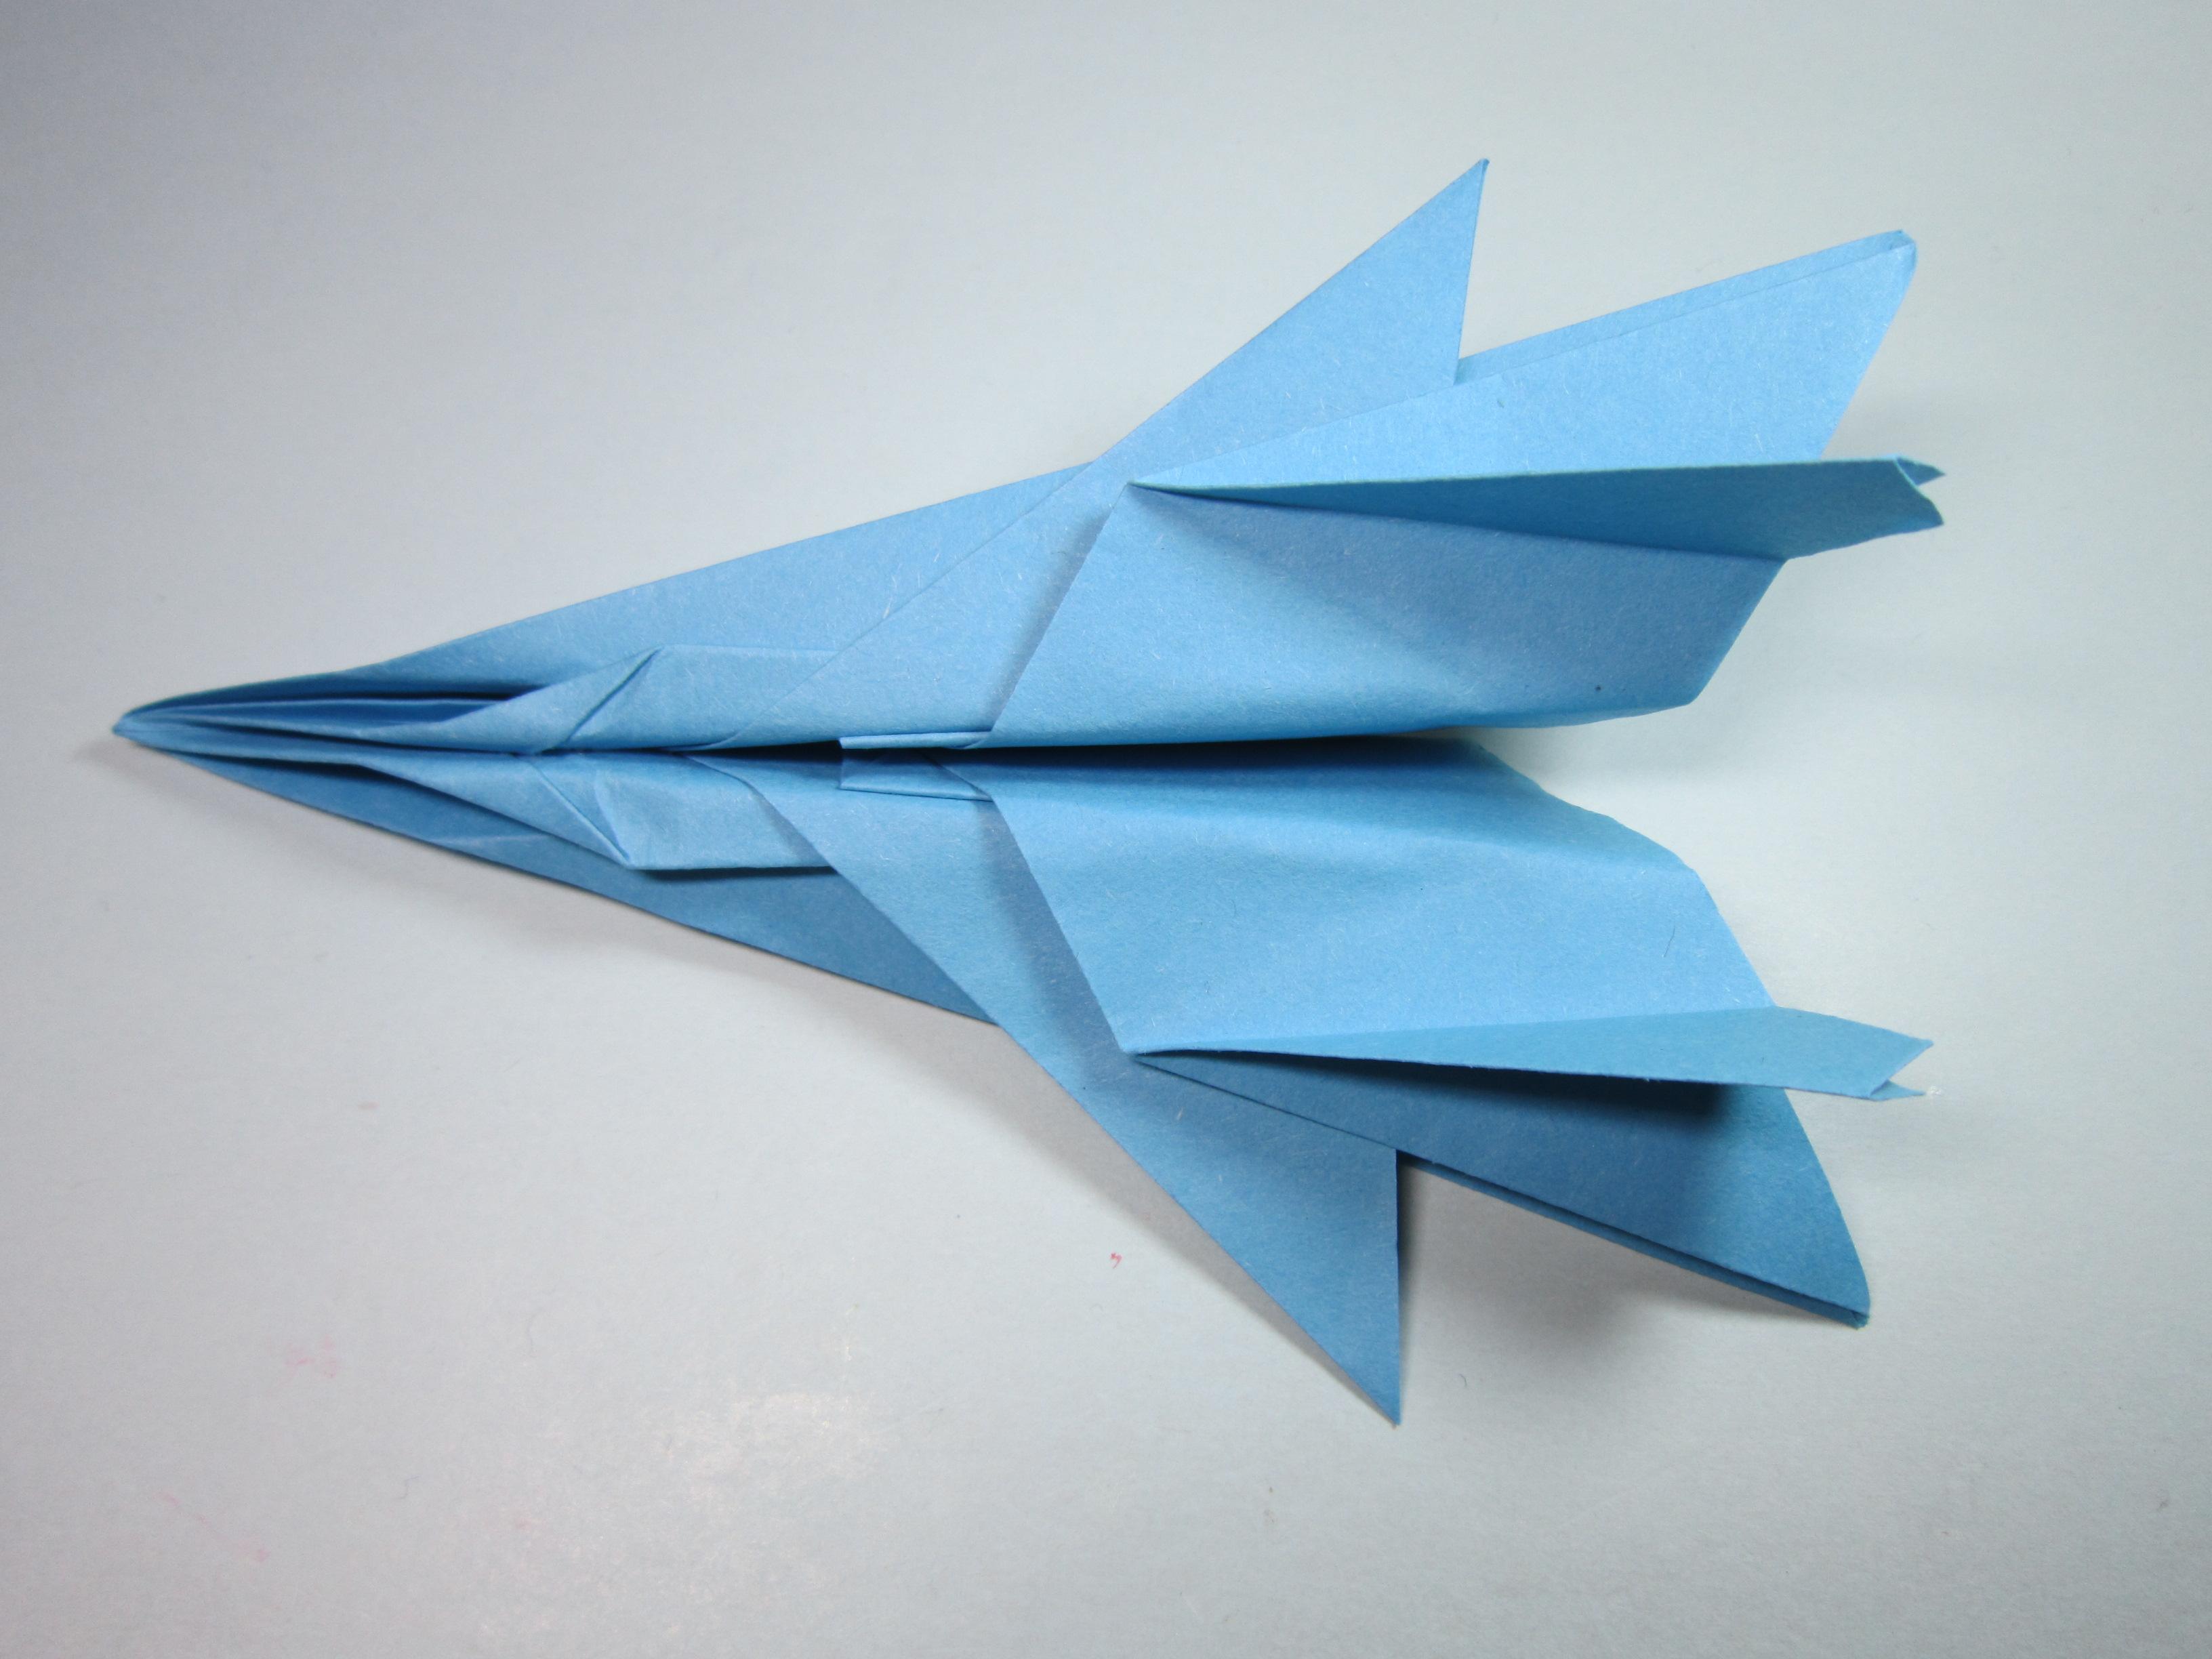 纸艺手工折纸f15战斗机,一张a4纸几分钟就能学会战斗机的折法